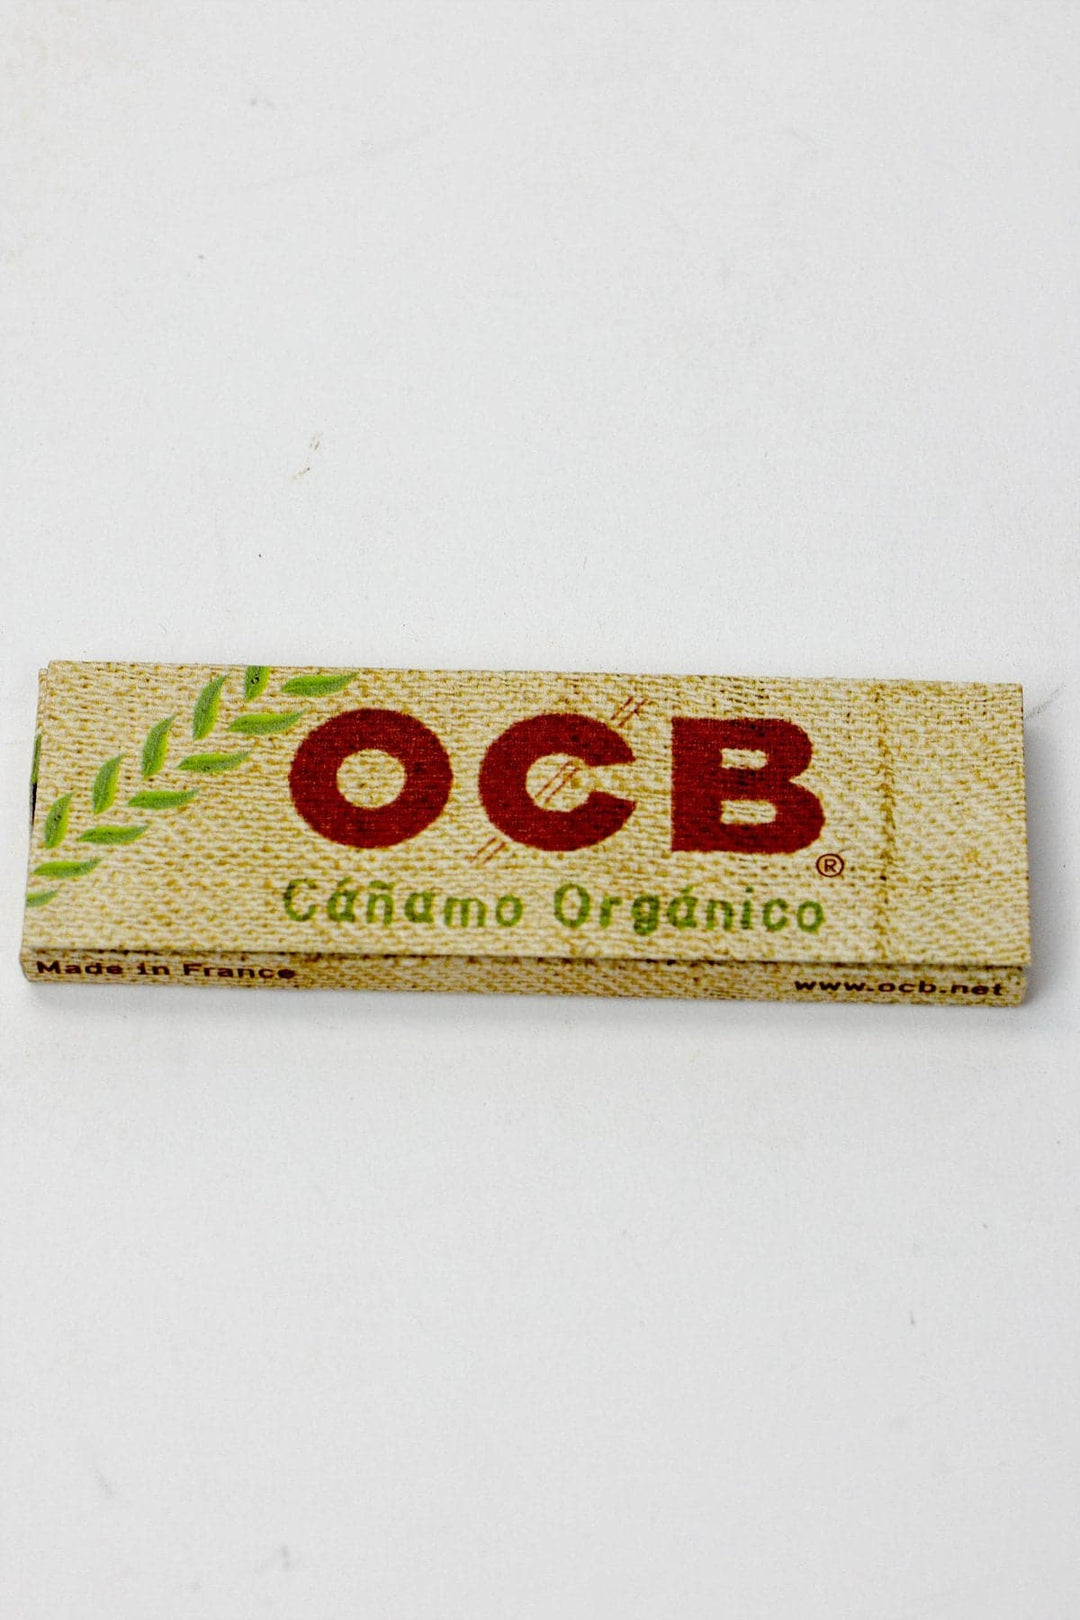 OCB Organic Hemp 1 1/4